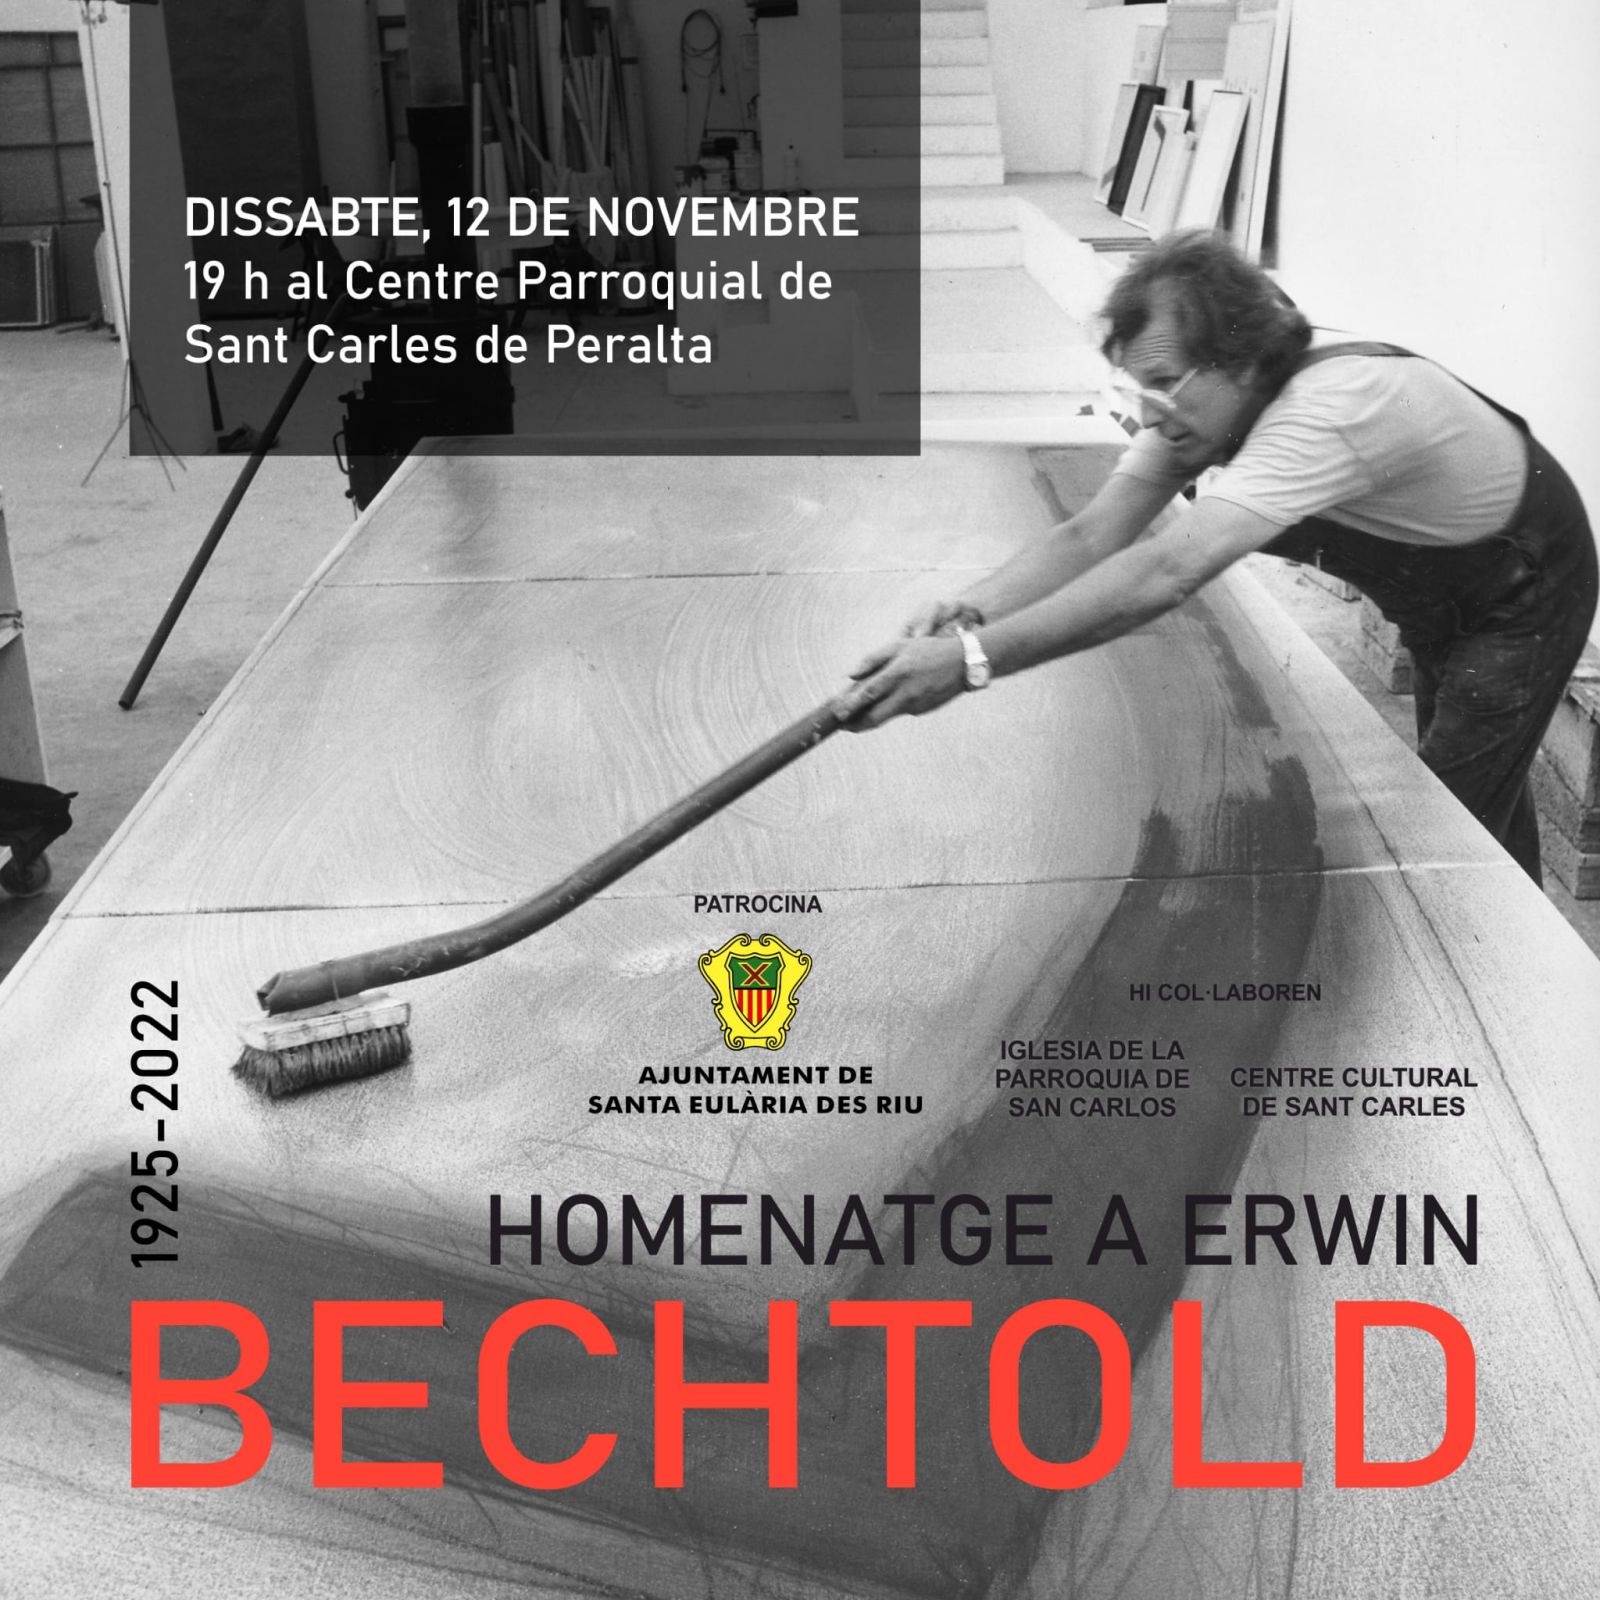 Homenaje-recital este sábado en el Centro Cultural de Sant Carles en honor del pintor Erwin Bechtold